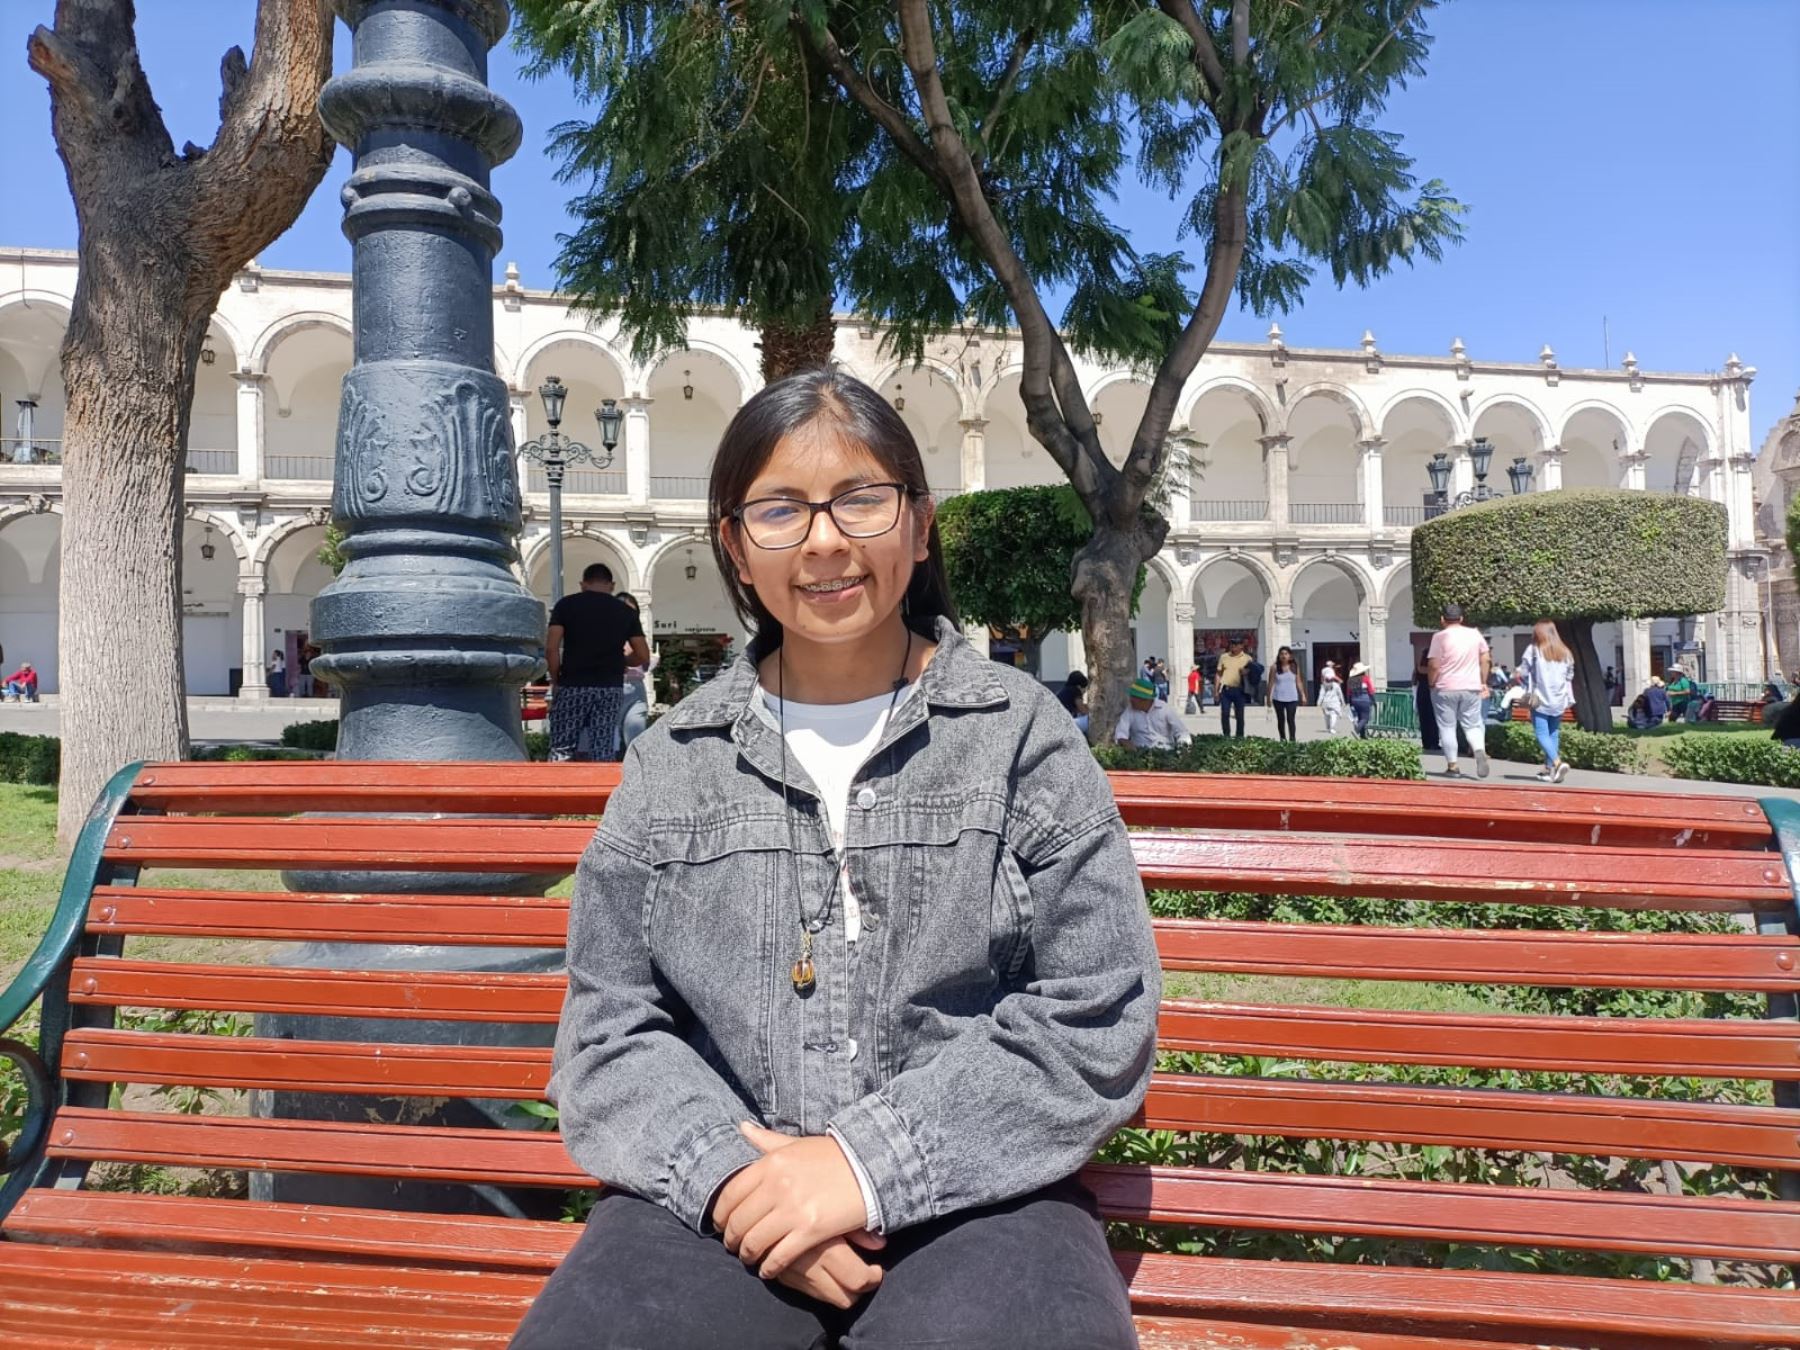 Andrea Huamán viajará en agosto a Estados Unidos para visitar la NASA. Ella es una de las 12 adolescentes seleccionadas por el programa "Ella es Astronauta". Foto: Rocío Méndez